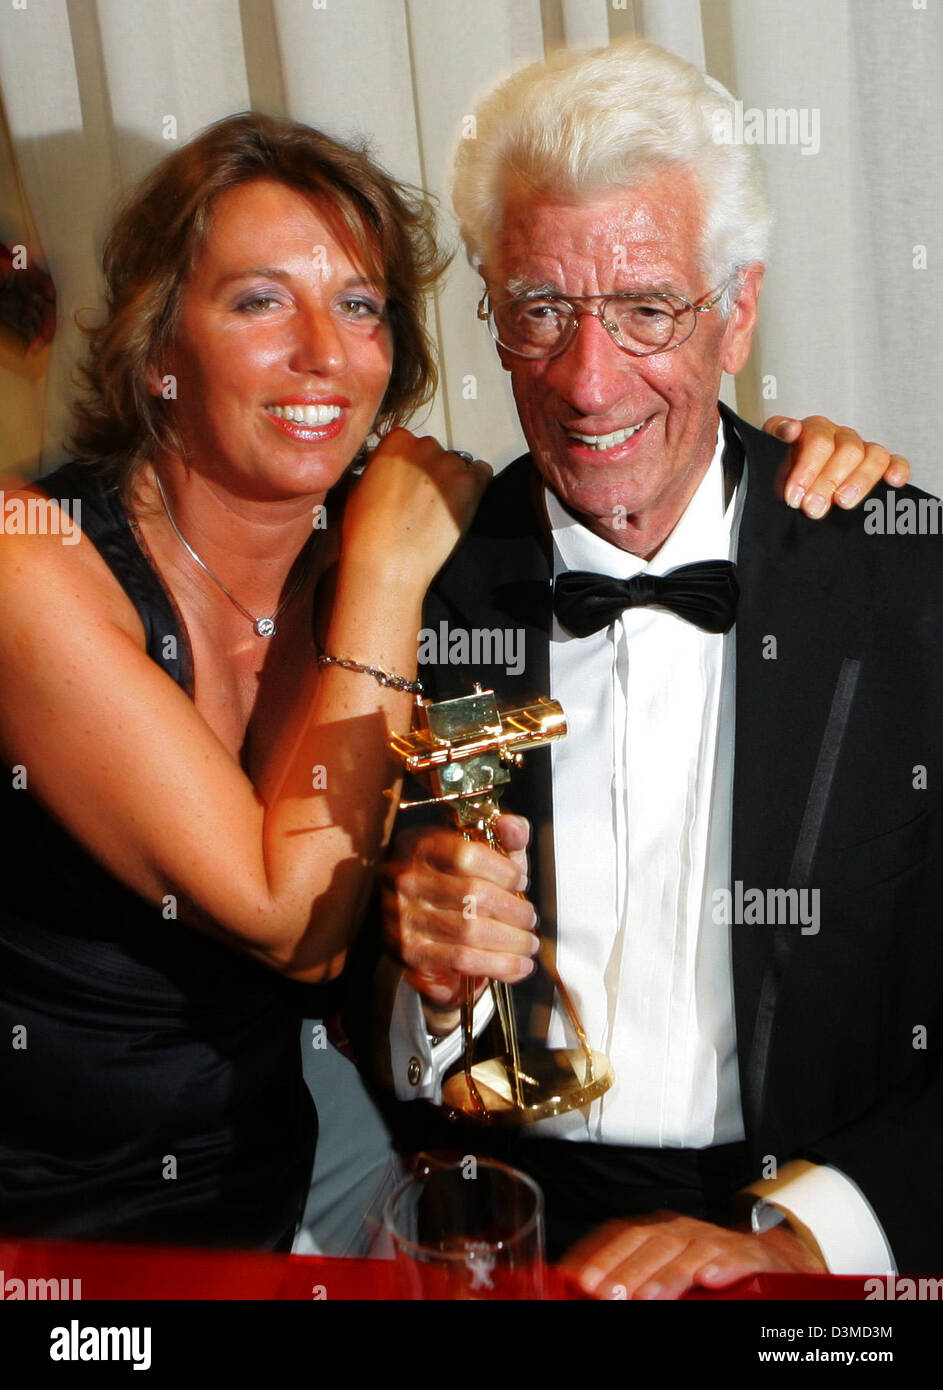 TV-Moderatorin Rudi Carrell (R) und seine Frau Simone stellen gemeinsam auf  der Aftershow-Party nach der "Goldenen Kamera" in Berlin, Donnerstag, 2.  Februar 2006 Preisverleihung. Carrell (71), der an Krebs leidet, erhielt die